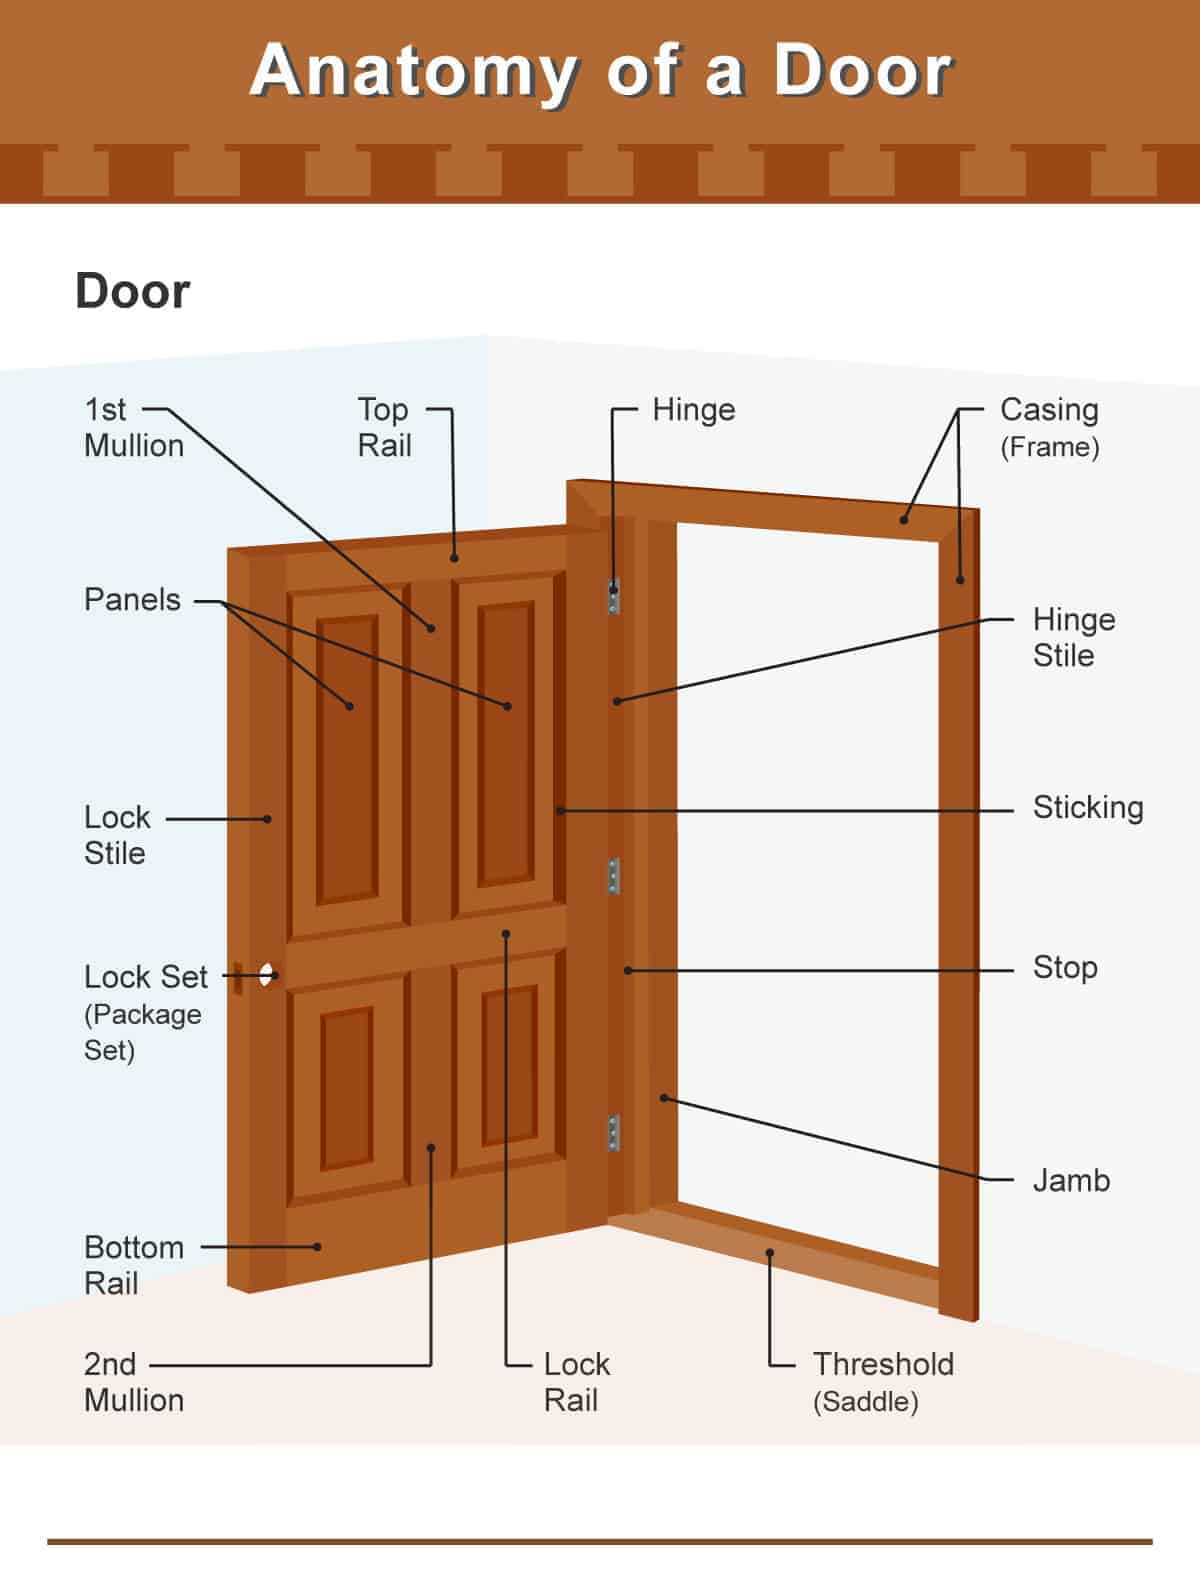 Different-parts-of-a-door